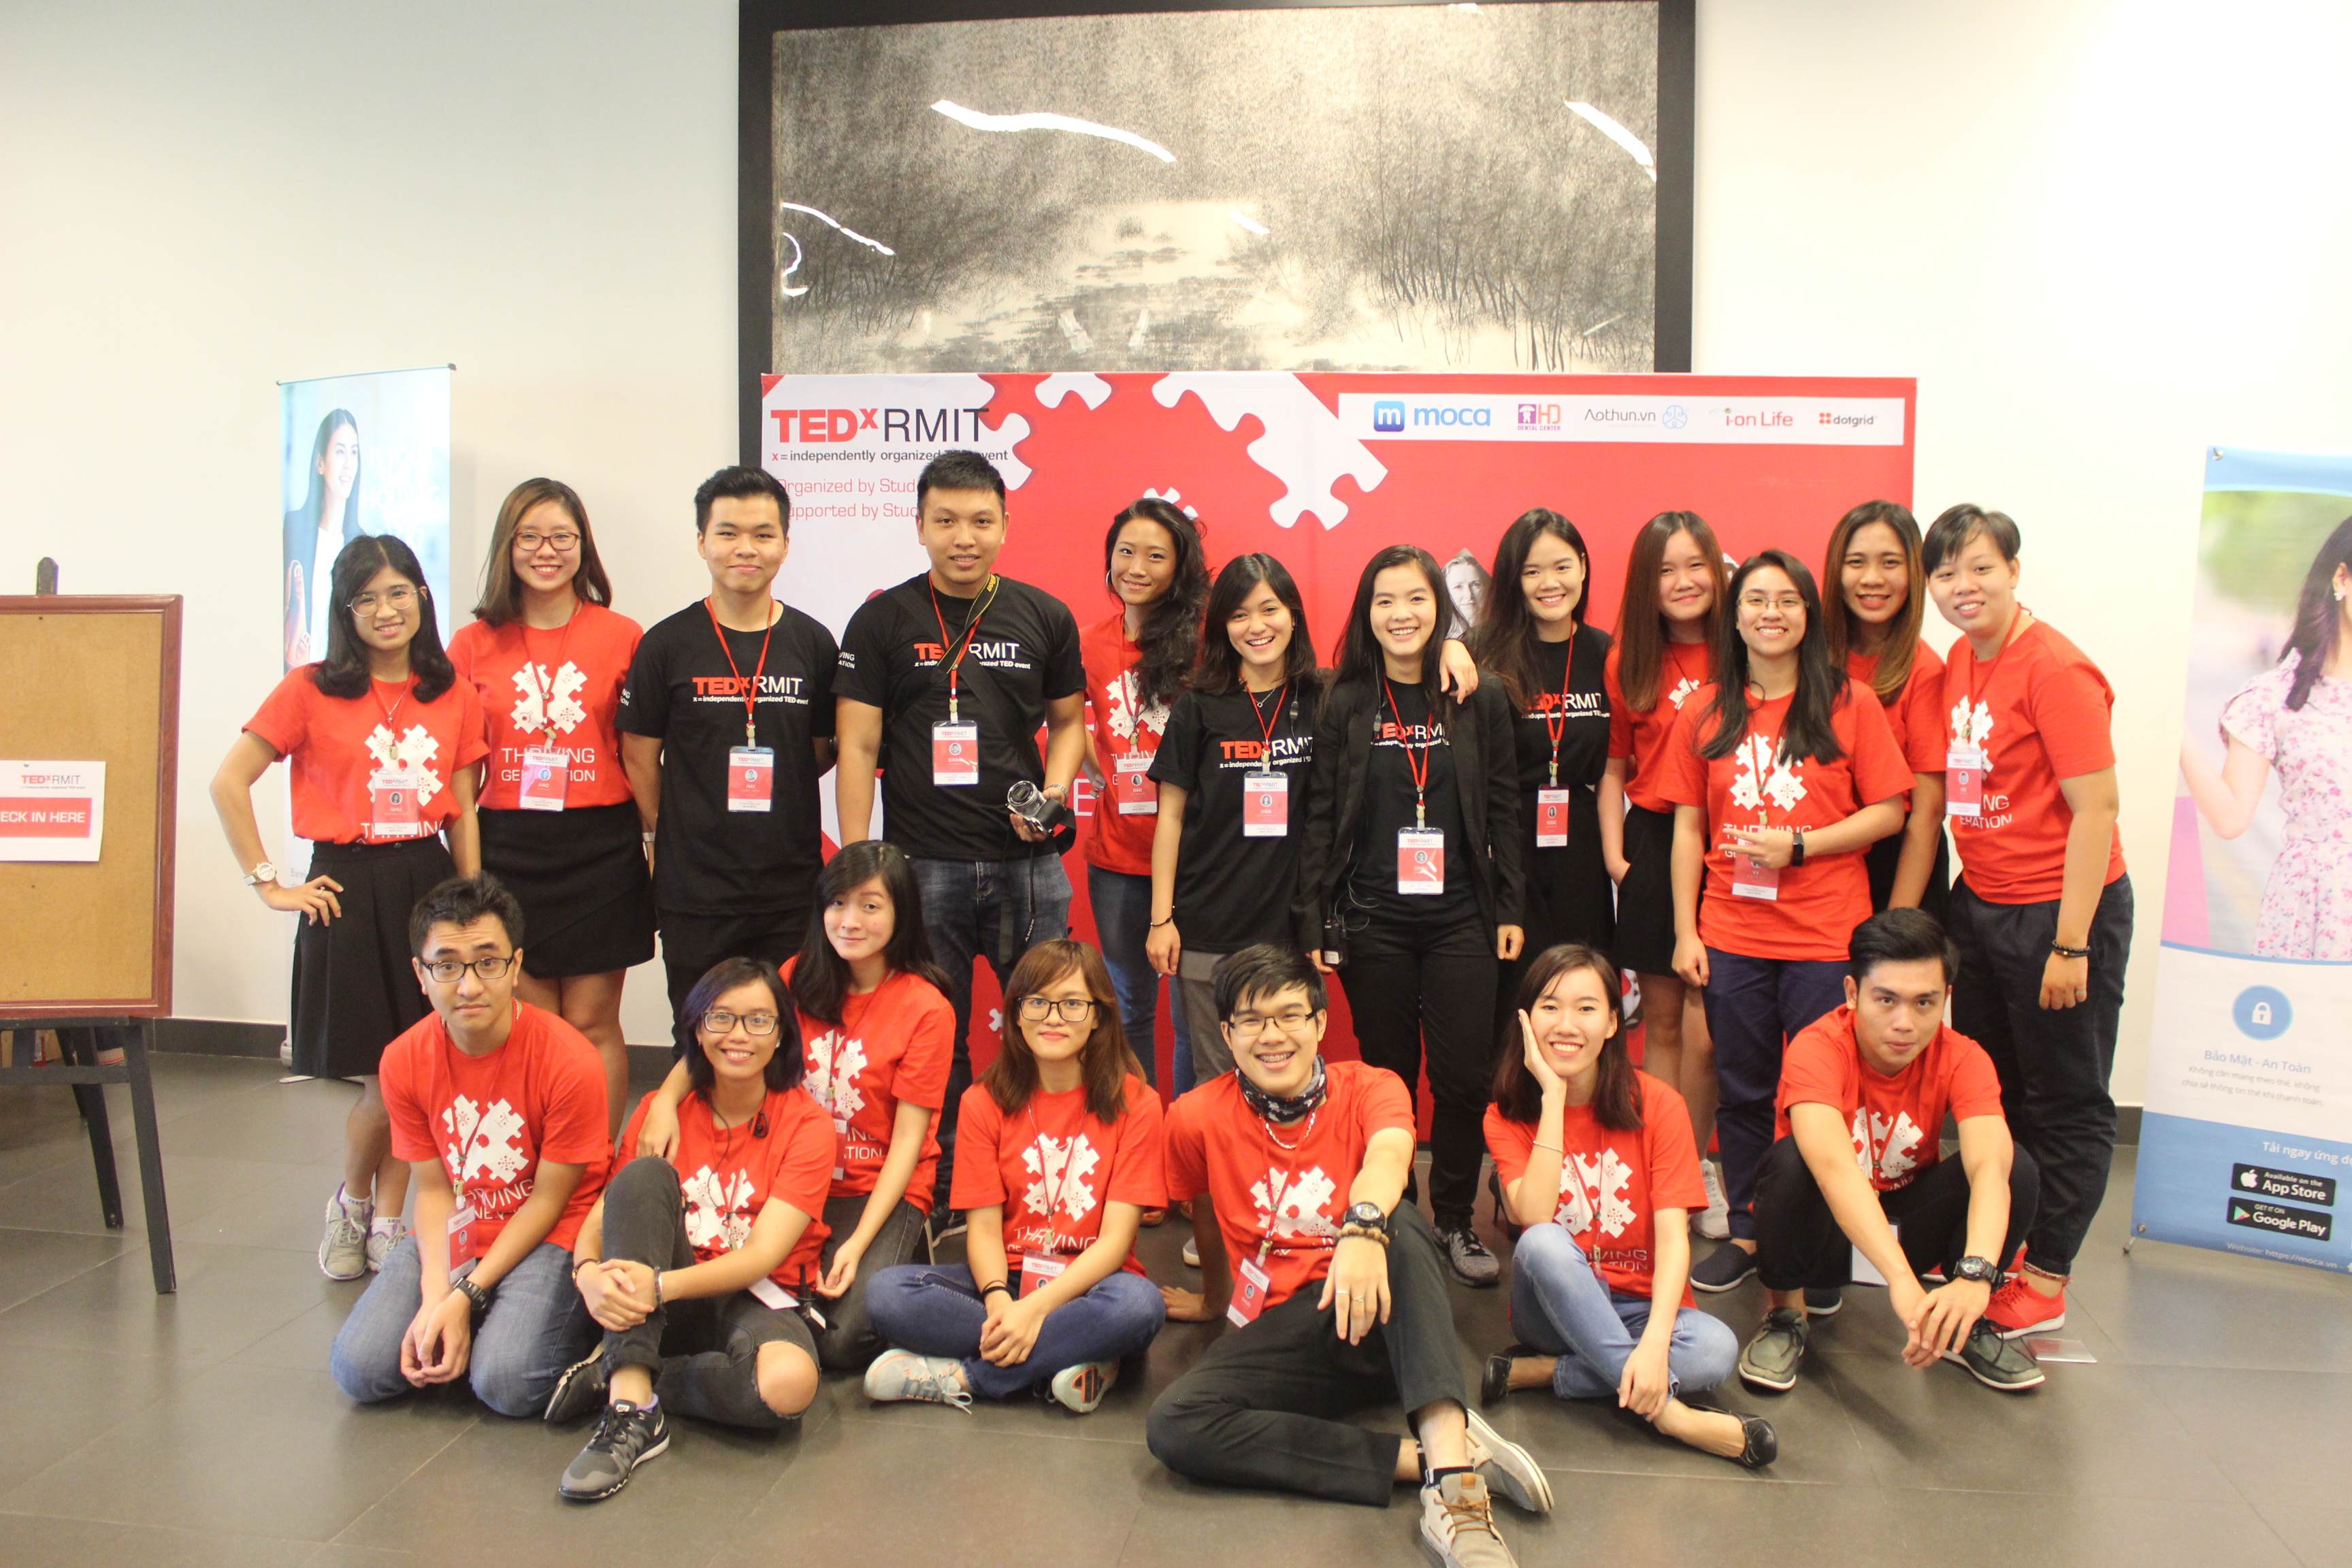 Nhóm sinh viên tổ chức TEDxRMIT tụ họp để mừng thành công sau sự kiện.